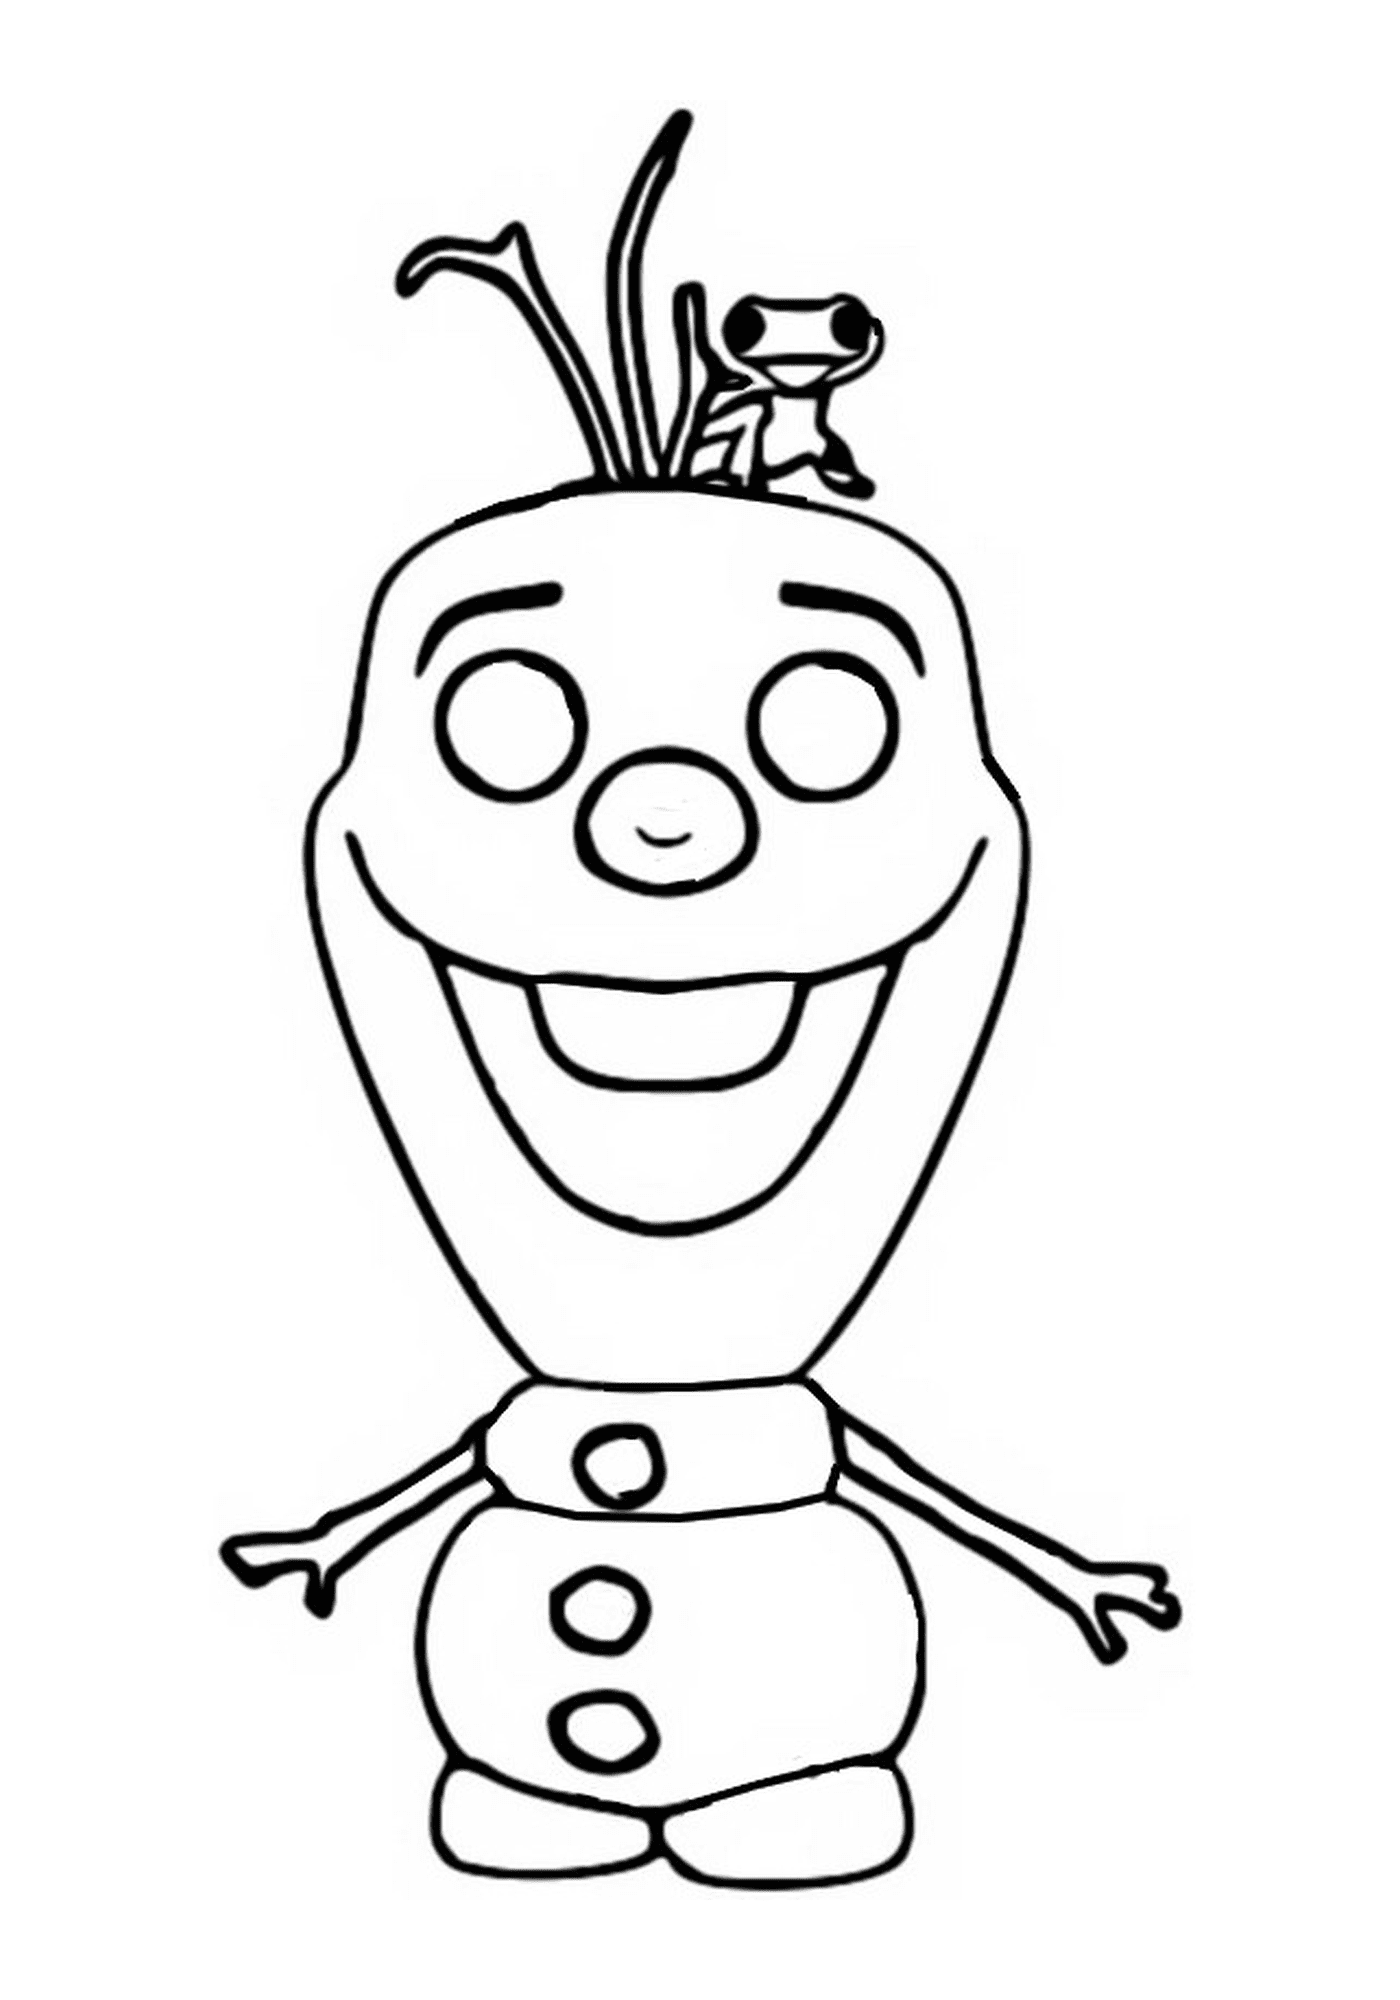  Olaf, Frozen 2, personaggio dei cartoni animati sorridente 